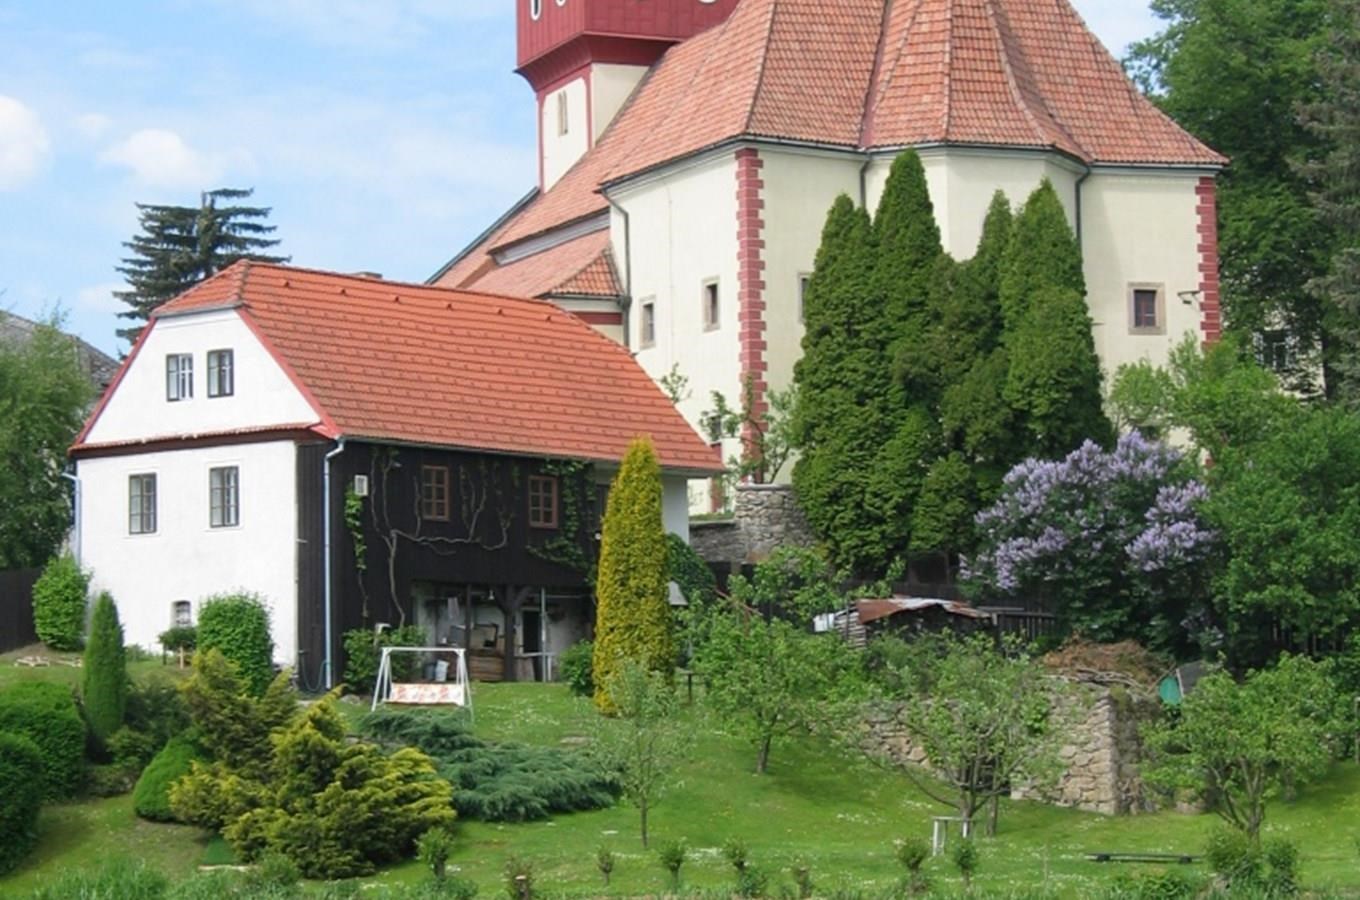 Kostel sv. Václava ve Světlé nad Sázavou